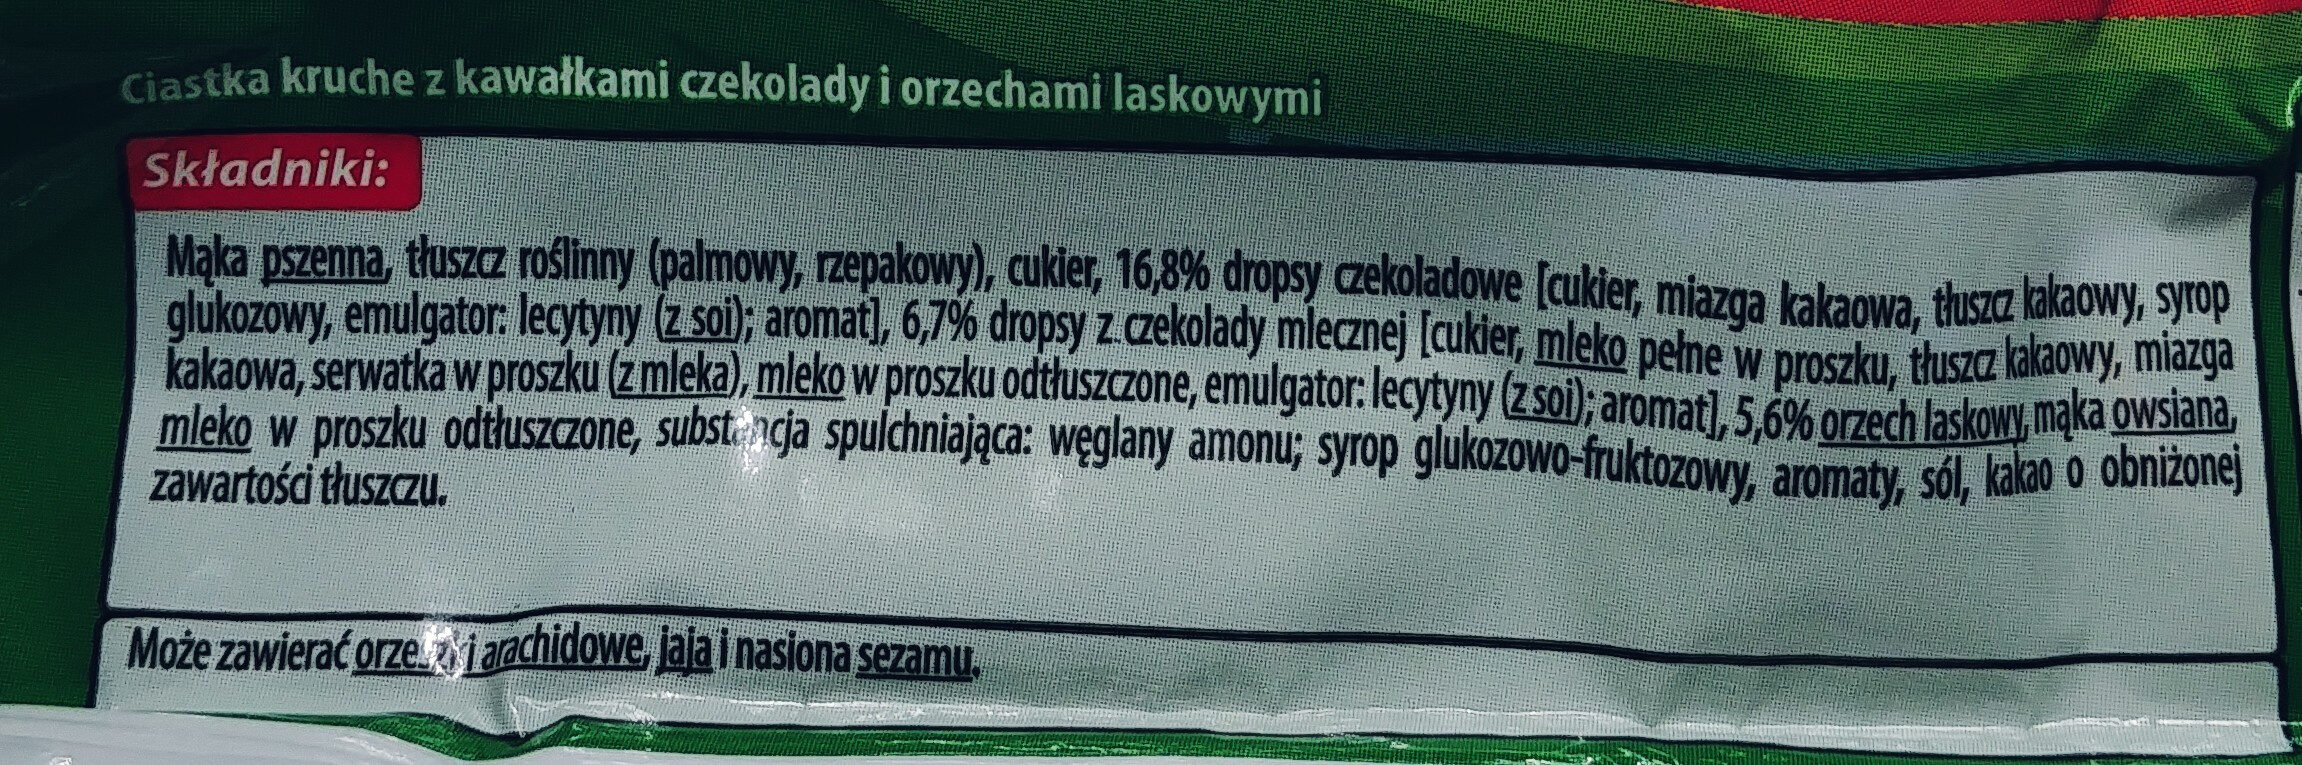 Kruszynki Orzeszki kawalki orzechów - Ingredients - pl